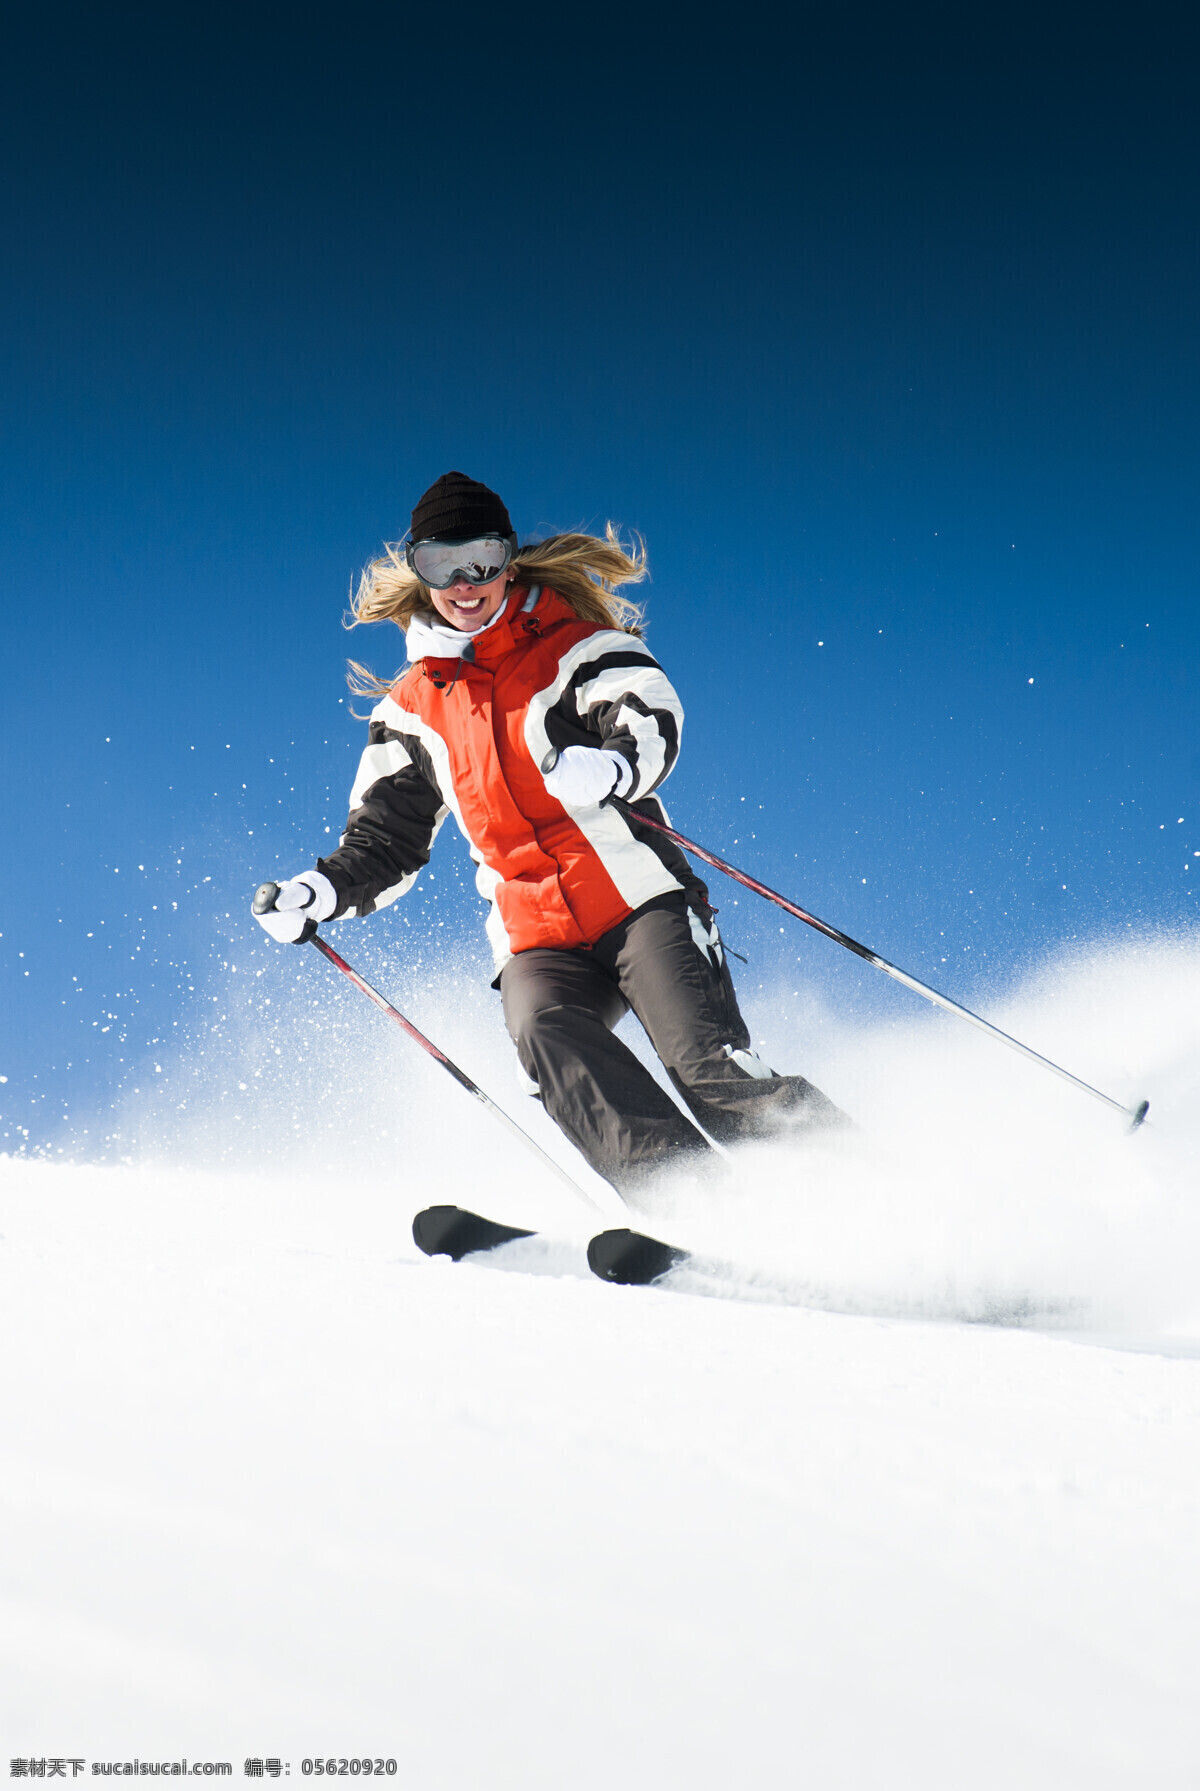 滑雪 冰雪运动 高山滑雪 滑雪运动 雪 蓝天 白云 滑雪场 运动 健身 保健 雪地 白雪 体育 人物 冬天 高清 风景 人物摄影 冬季 寒冬 大雪 雪山 冰雪 冬季运动 极限运动 滑雪运动员 体育运动 文化艺术